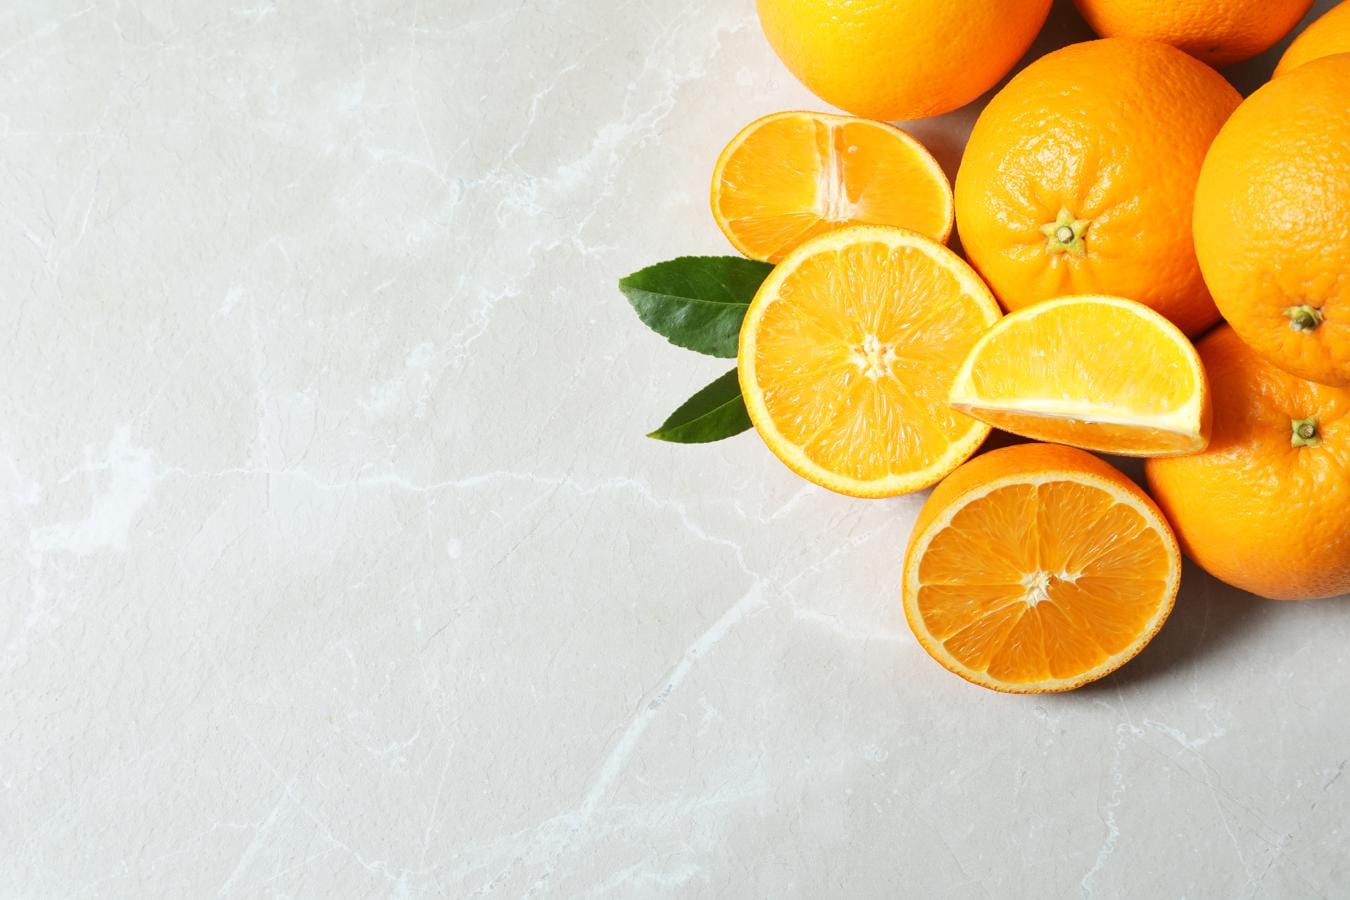 La naranja, la fruta que siempre se nombra cuando se habla de la vitamina C. Junto al brócoli o los arándanos, la naranja es uno de los alimentos más beneficiosos que lucha contra el envejecimiento celular y de la piel. Aporta unos 50 mg de vitamina C por cada 100 gramos.